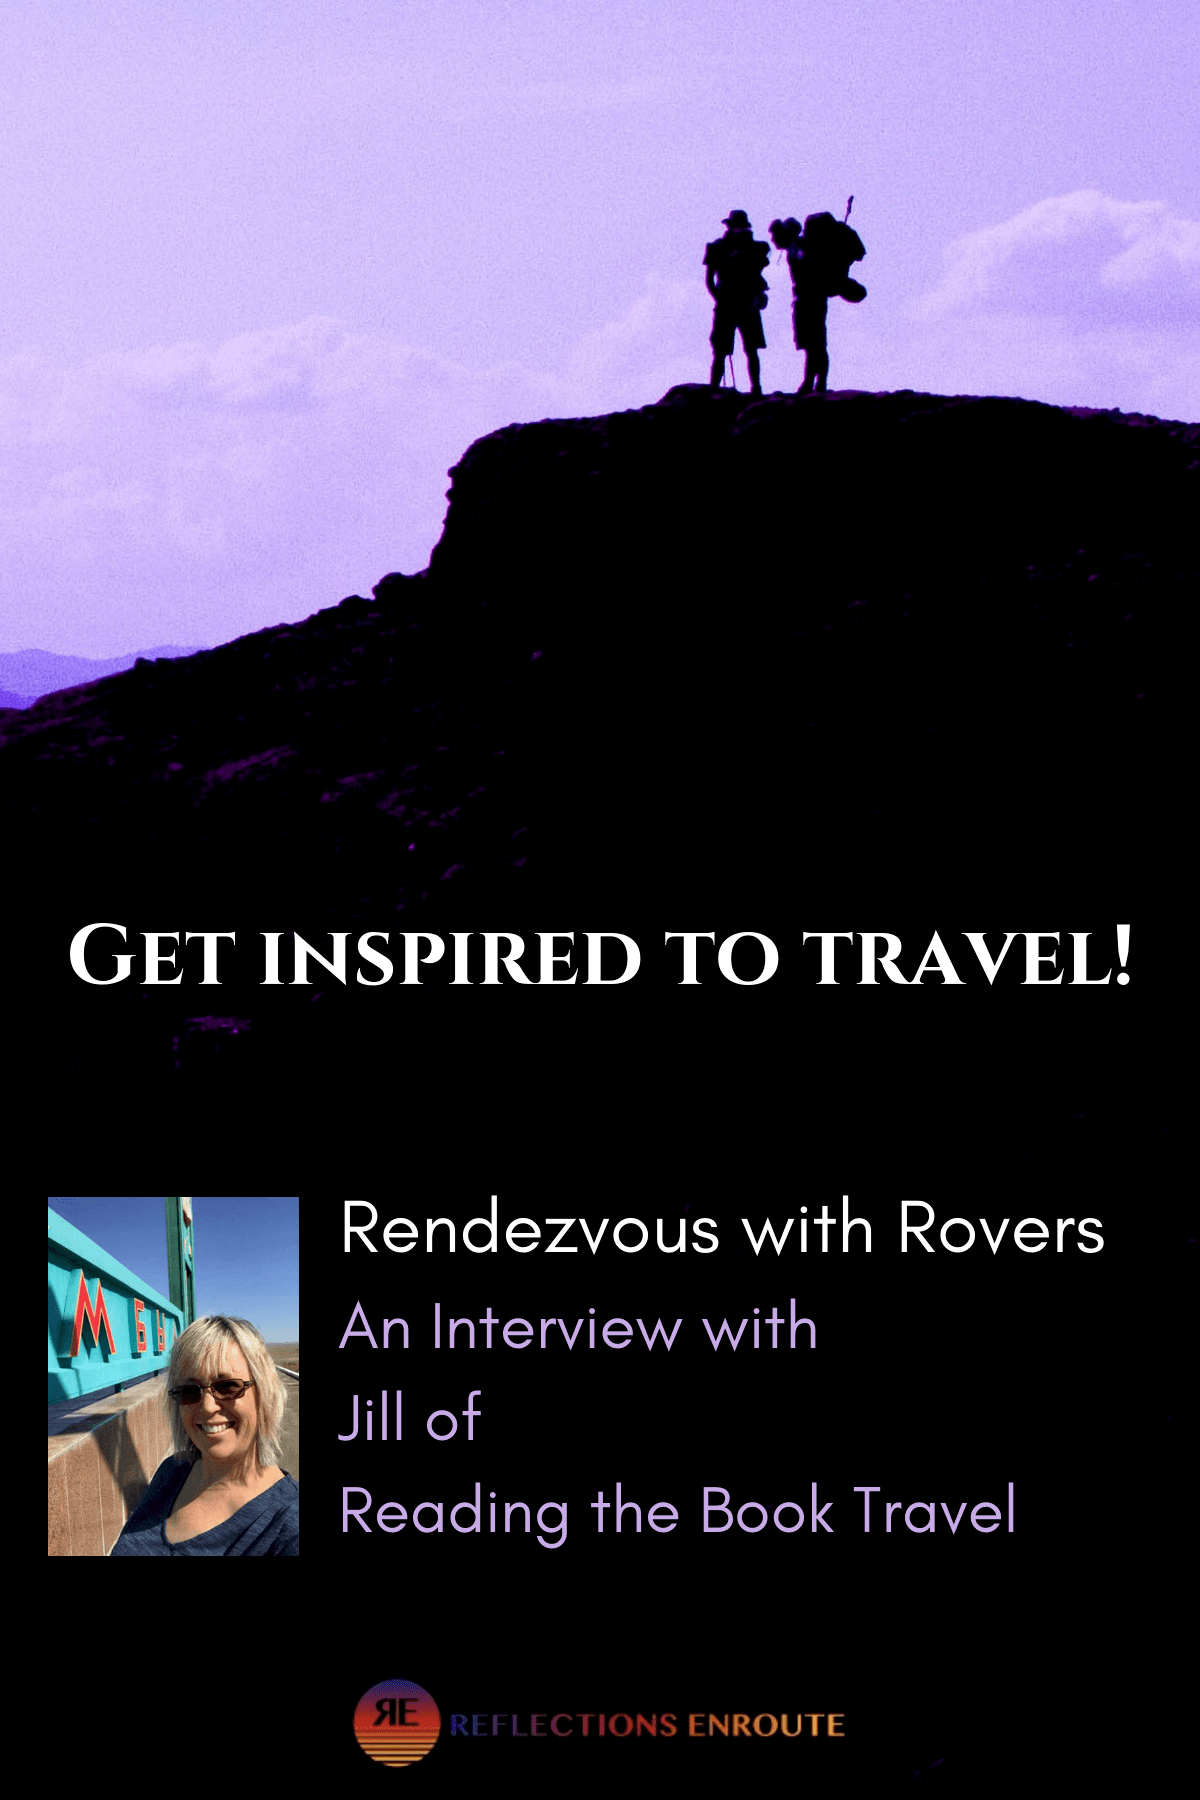 Jill - A traveler interview!